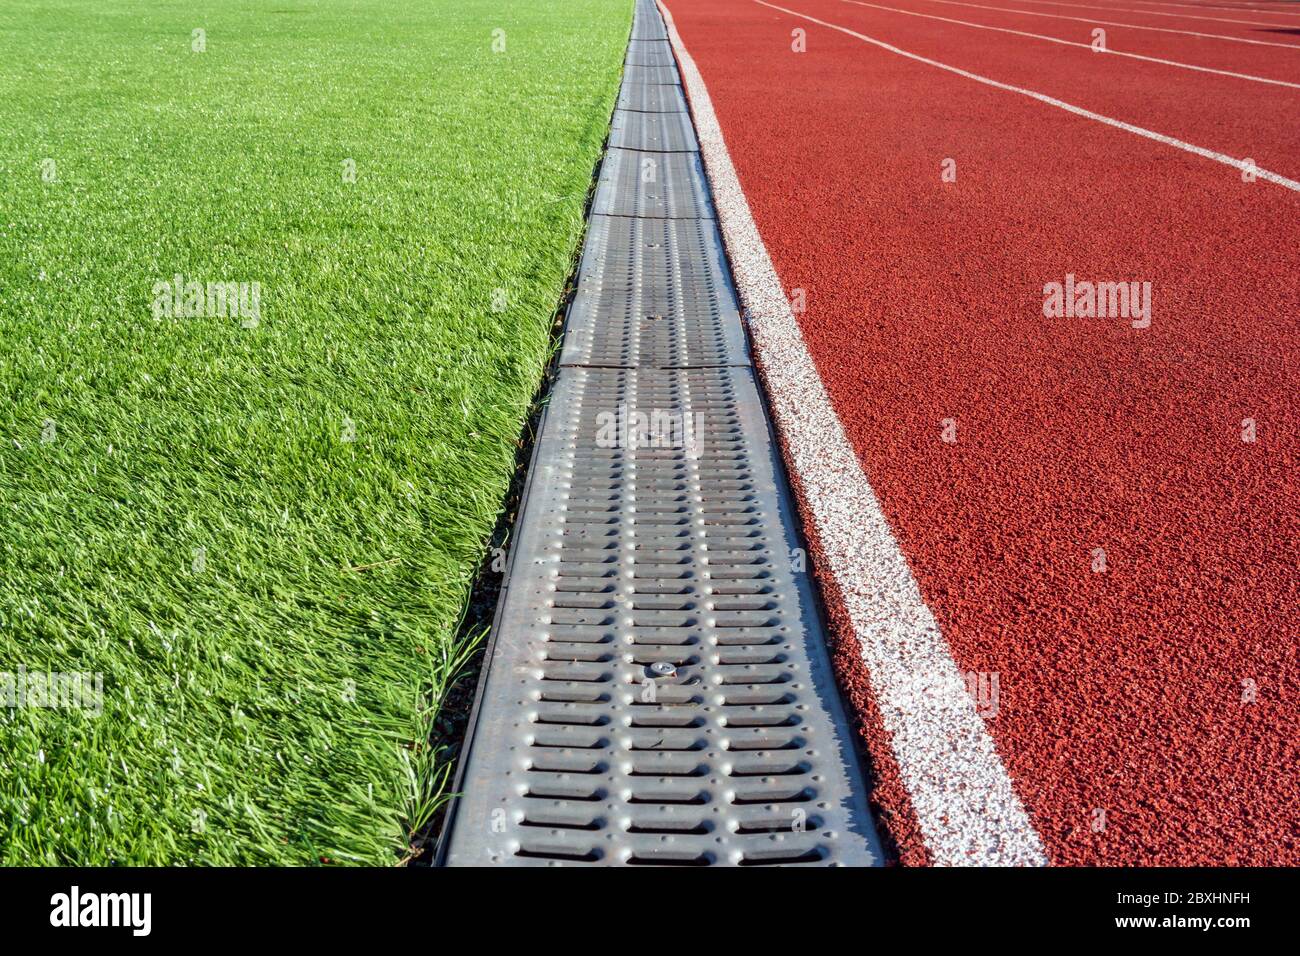 La frontière entre le terrain de football et le tapis roulant dans le stade  de sport sous forme de caniveau. Vidange de l'eau dans le stade Photo Stock  - Alamy